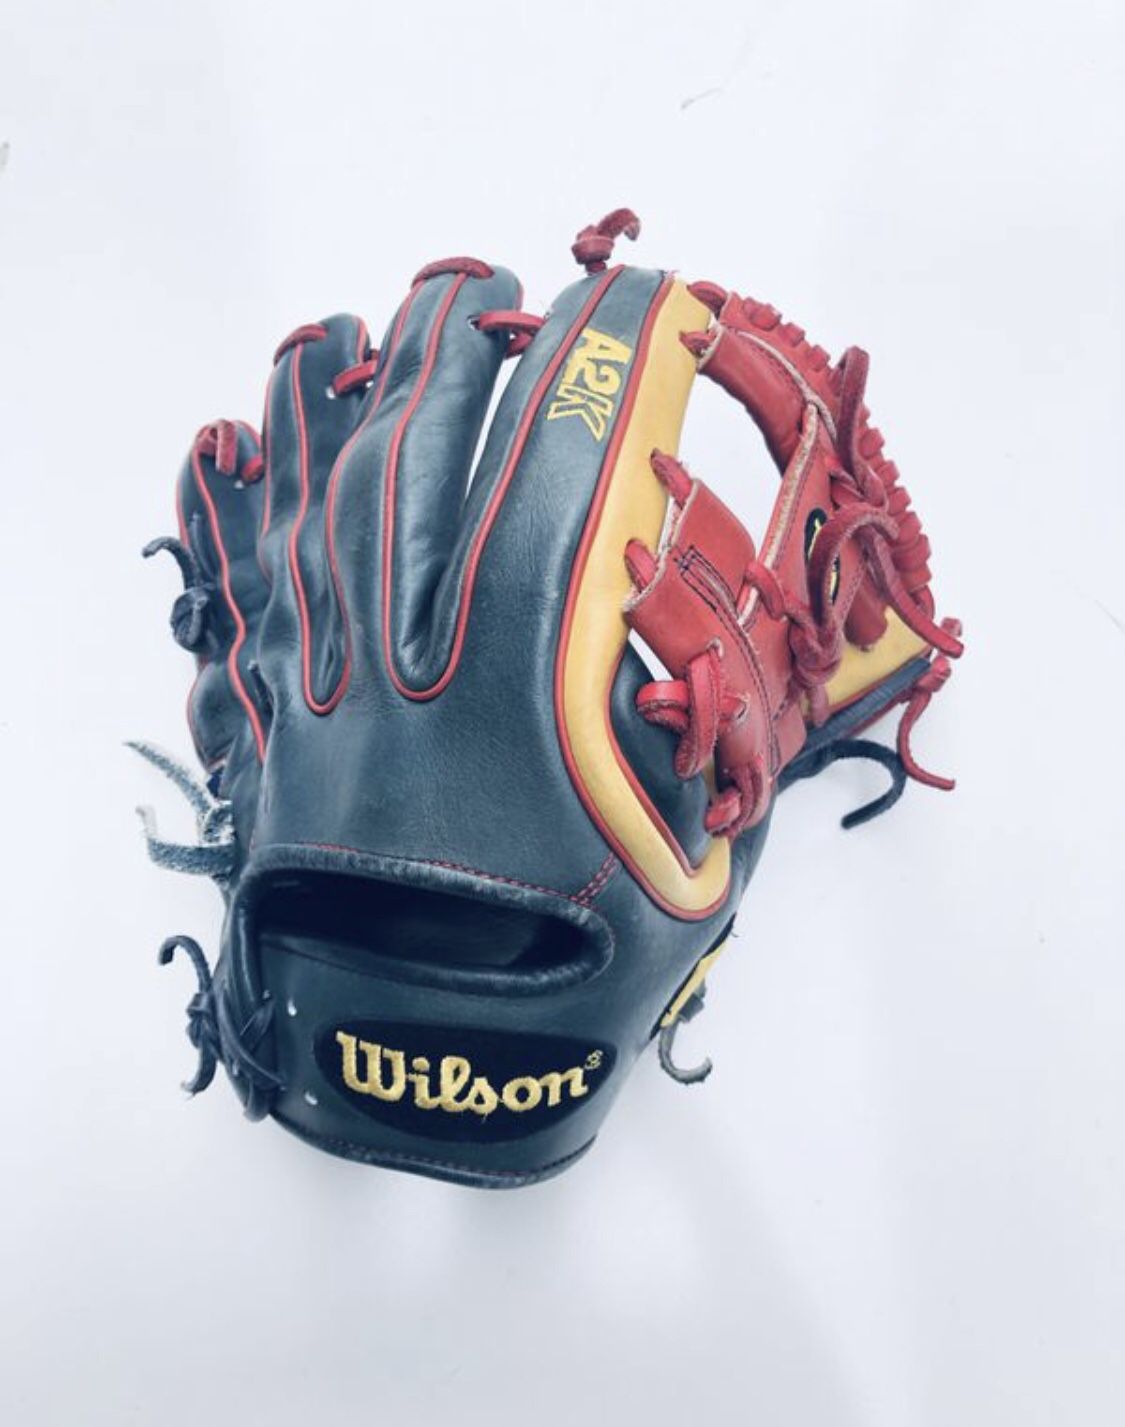 Datdude A2K 11.25 baseball glove Rare 2018